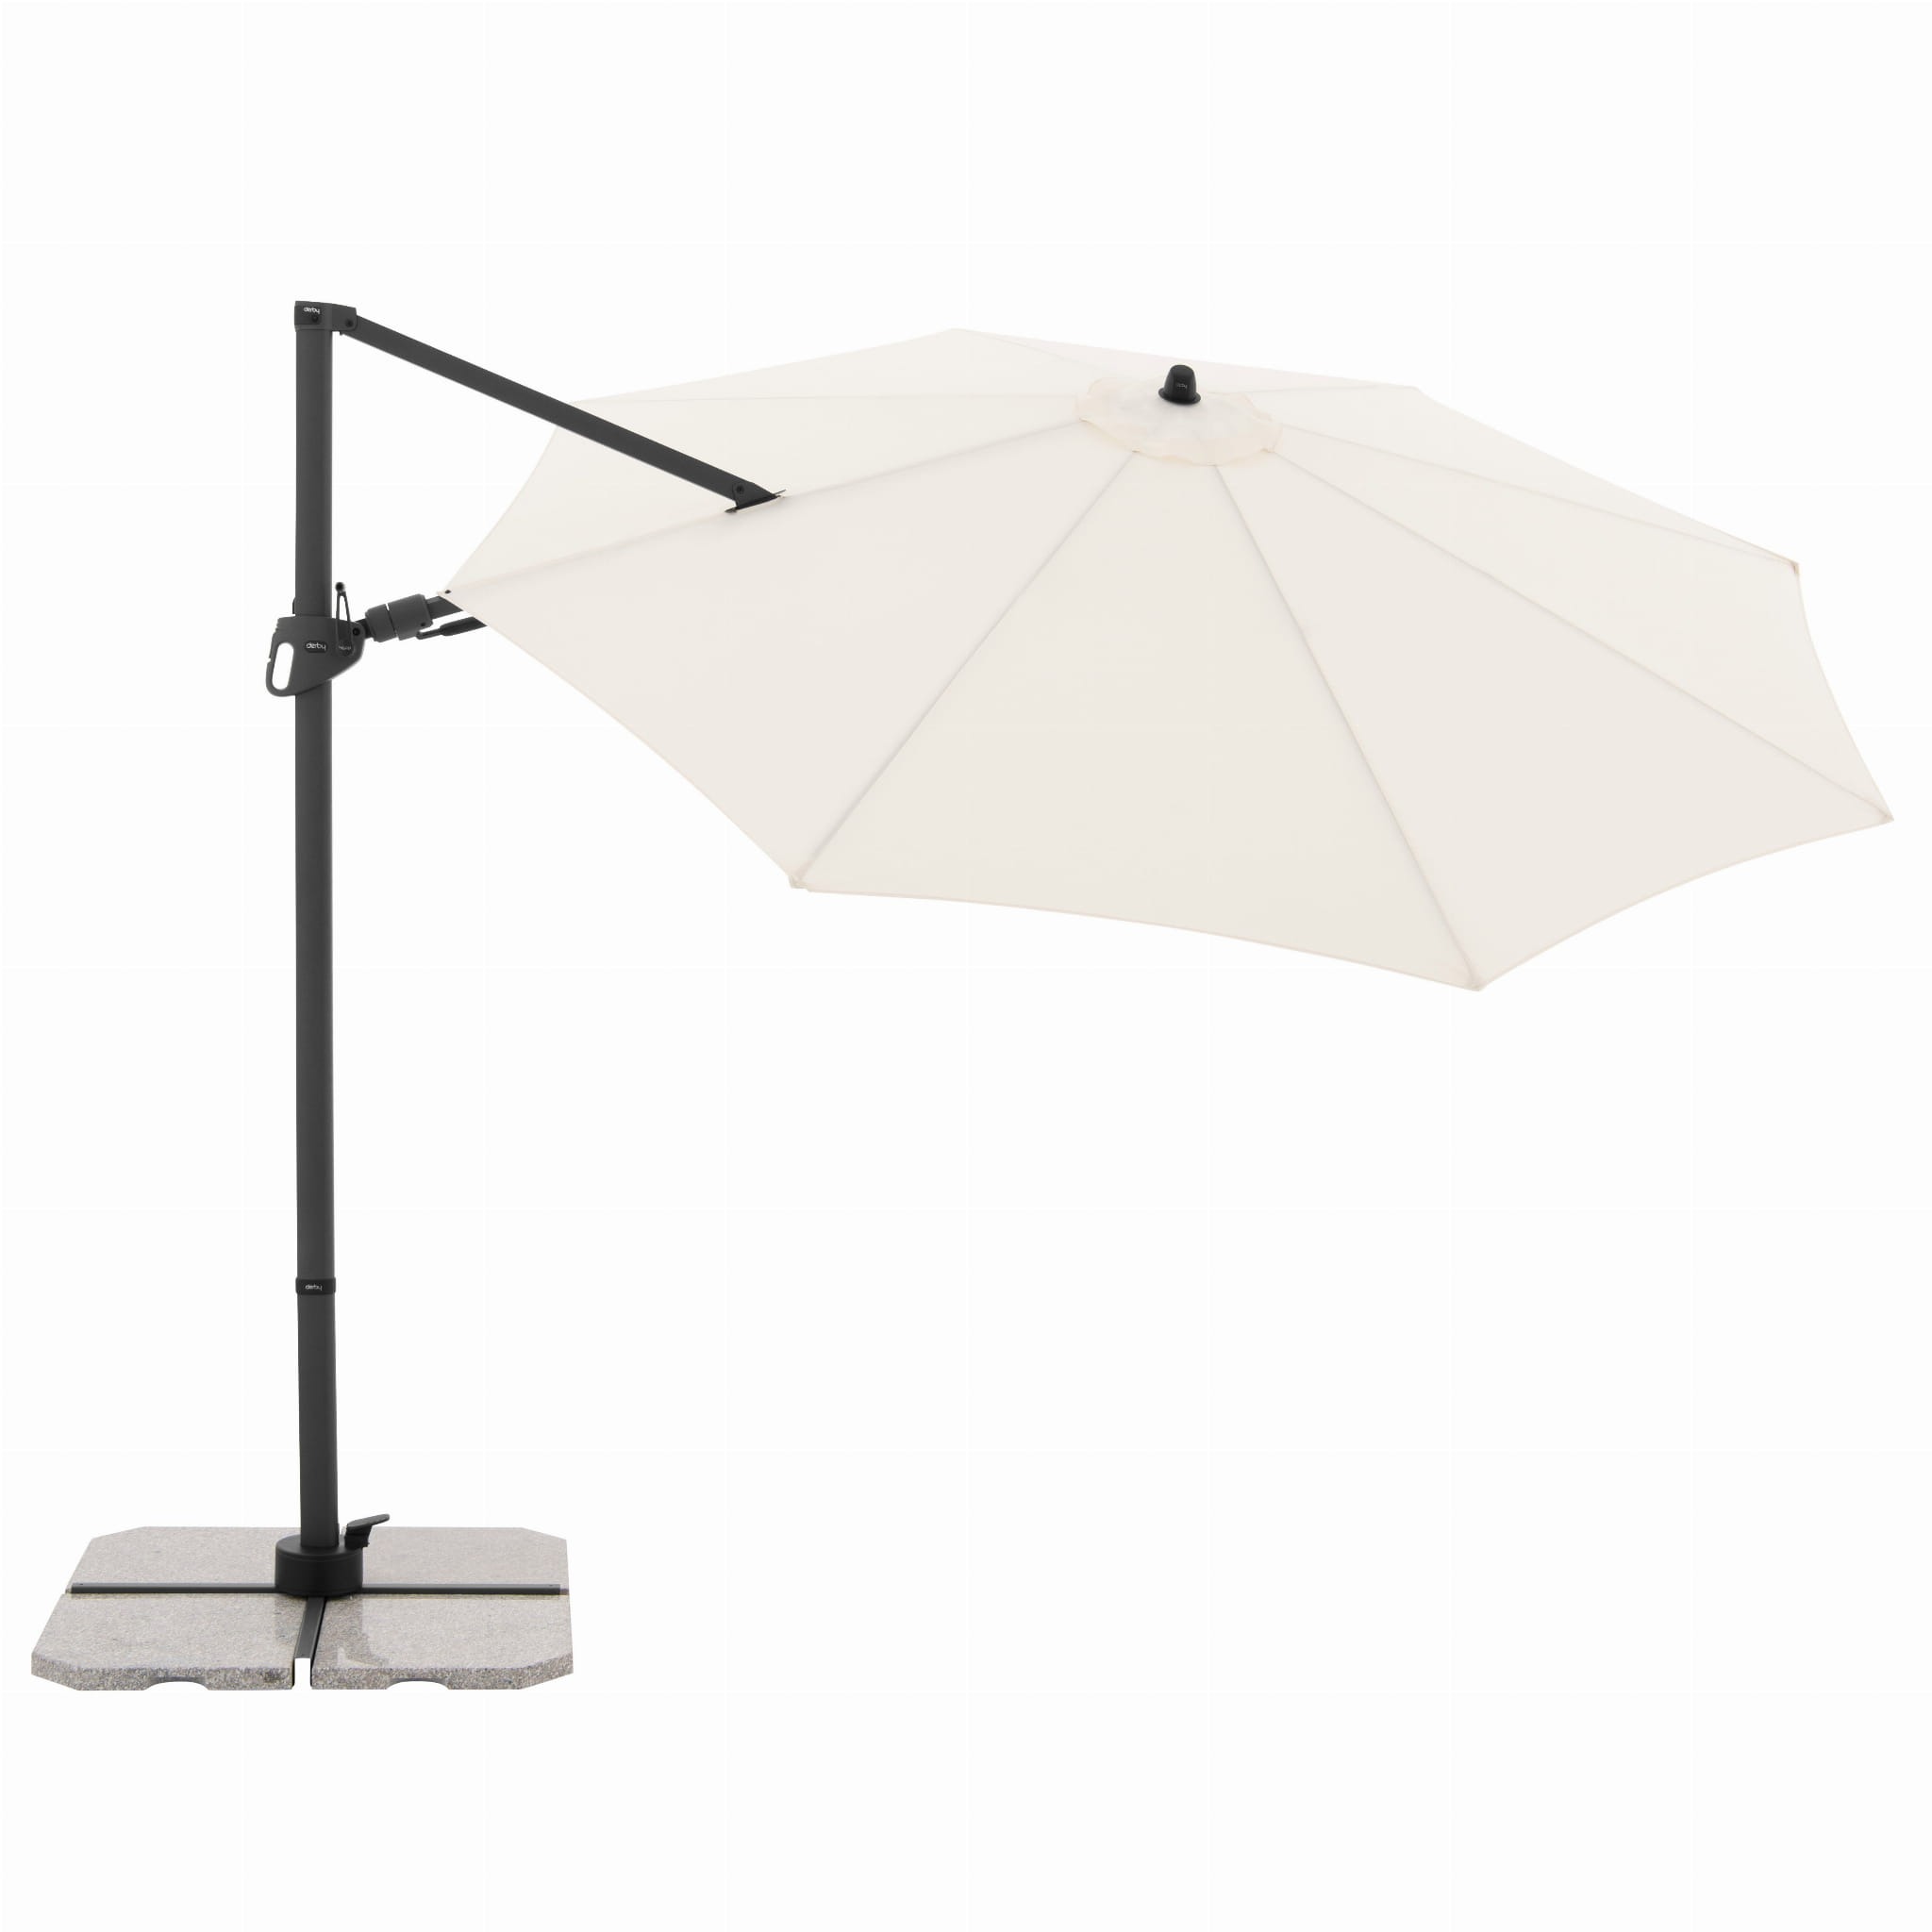 Зонт садовый Doppler Derby DX бежевый 335 см без подставки купол зонта стихи